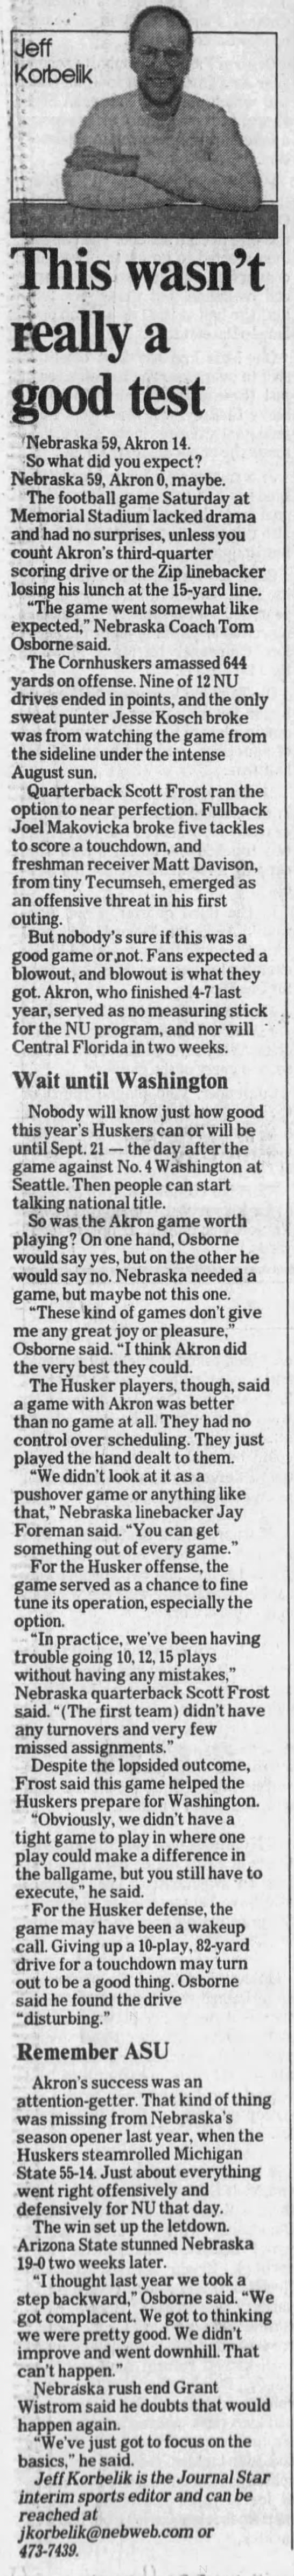 1997 Nebraska-Akron football Jeff Korbelik column - 